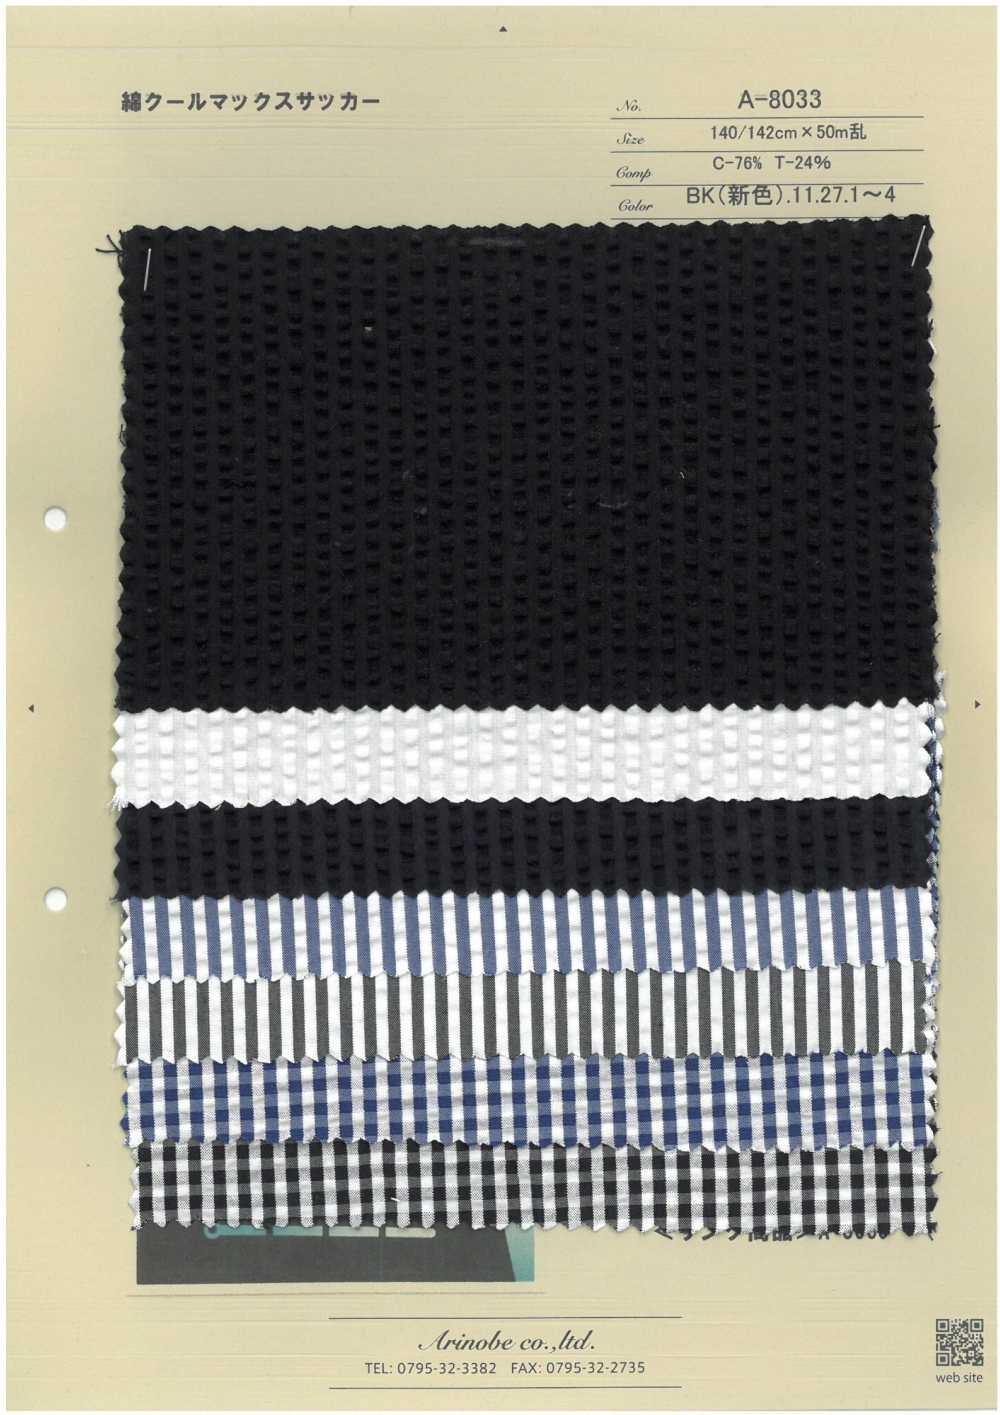 A-8033 Baumwoll-Coolmax-Seersucker[Textilgewebe] ARINOBE CO., LTD.